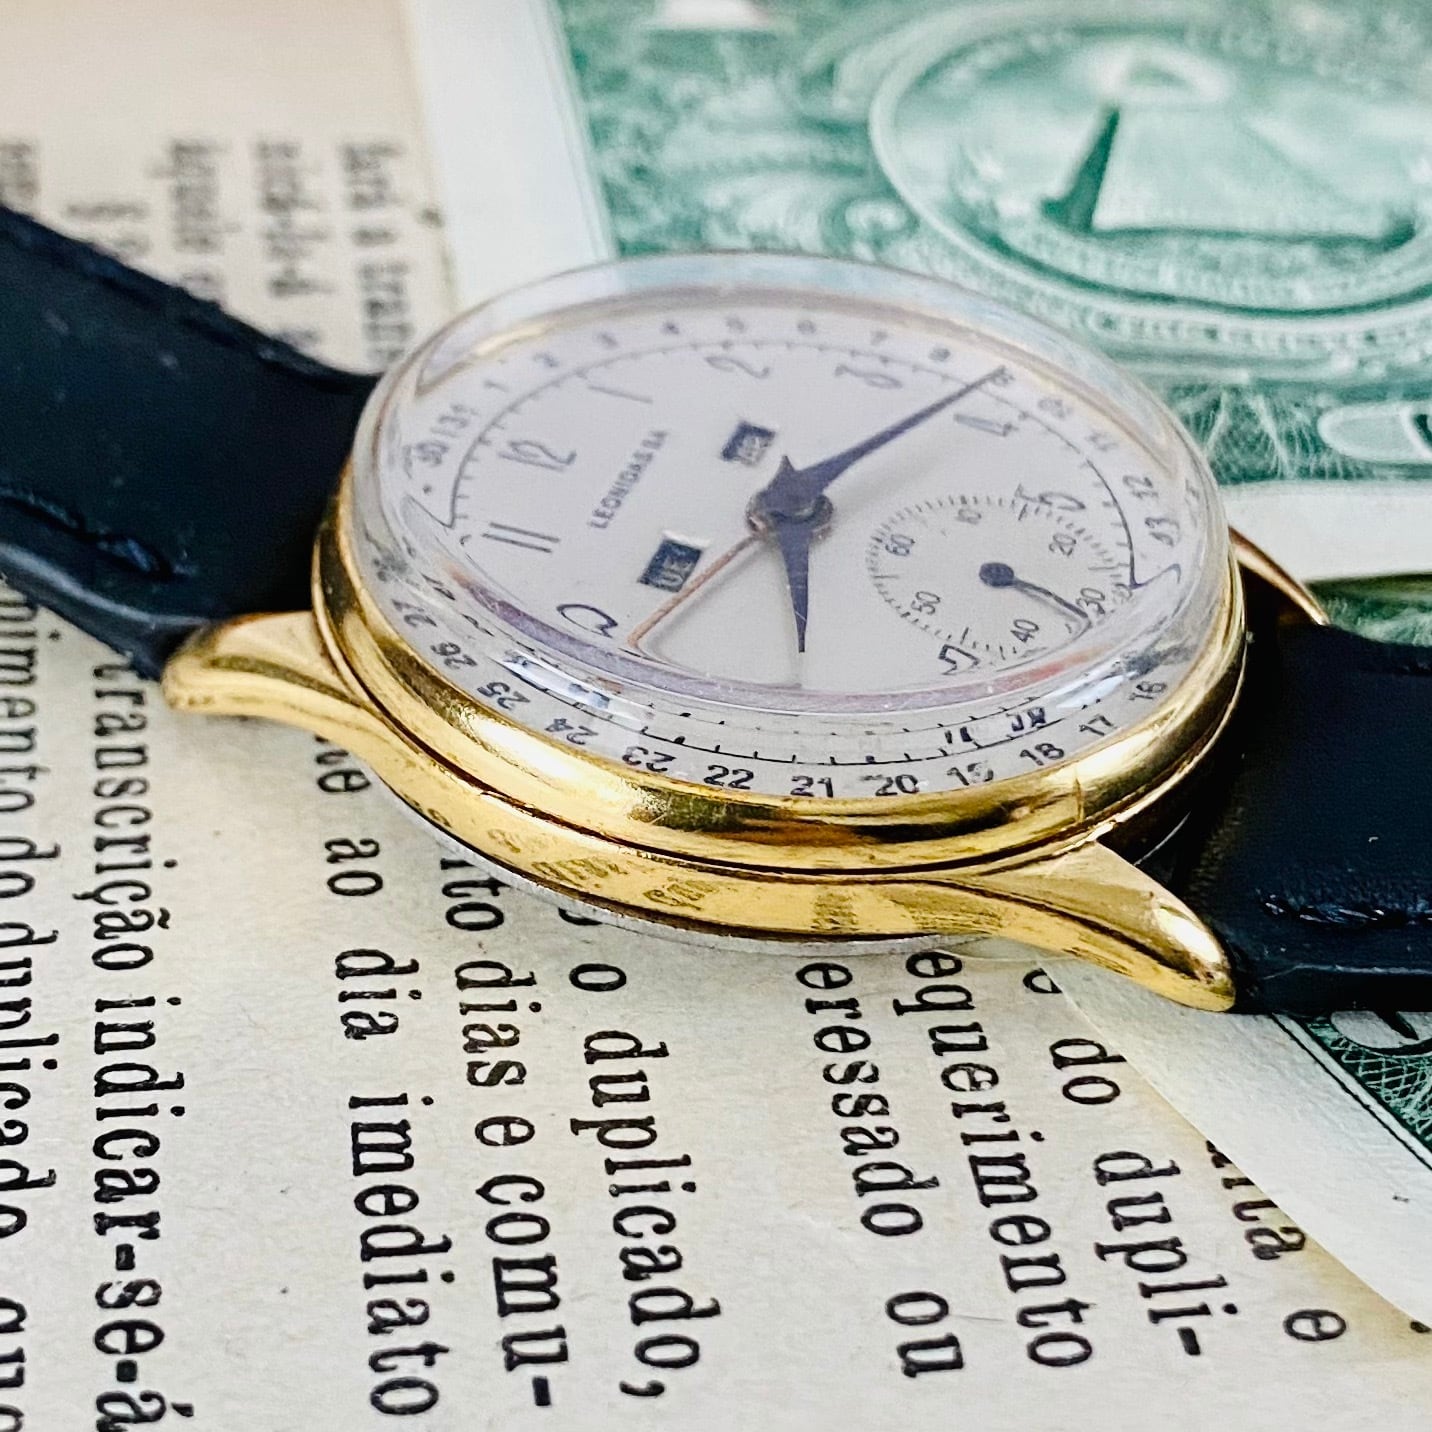 【高級時計 レオニダス】LEONIDAS SA スモセコ トリプルカレンダー 手巻き 1950年代製 メンズ レディース ビンテージ アナログ 腕時計